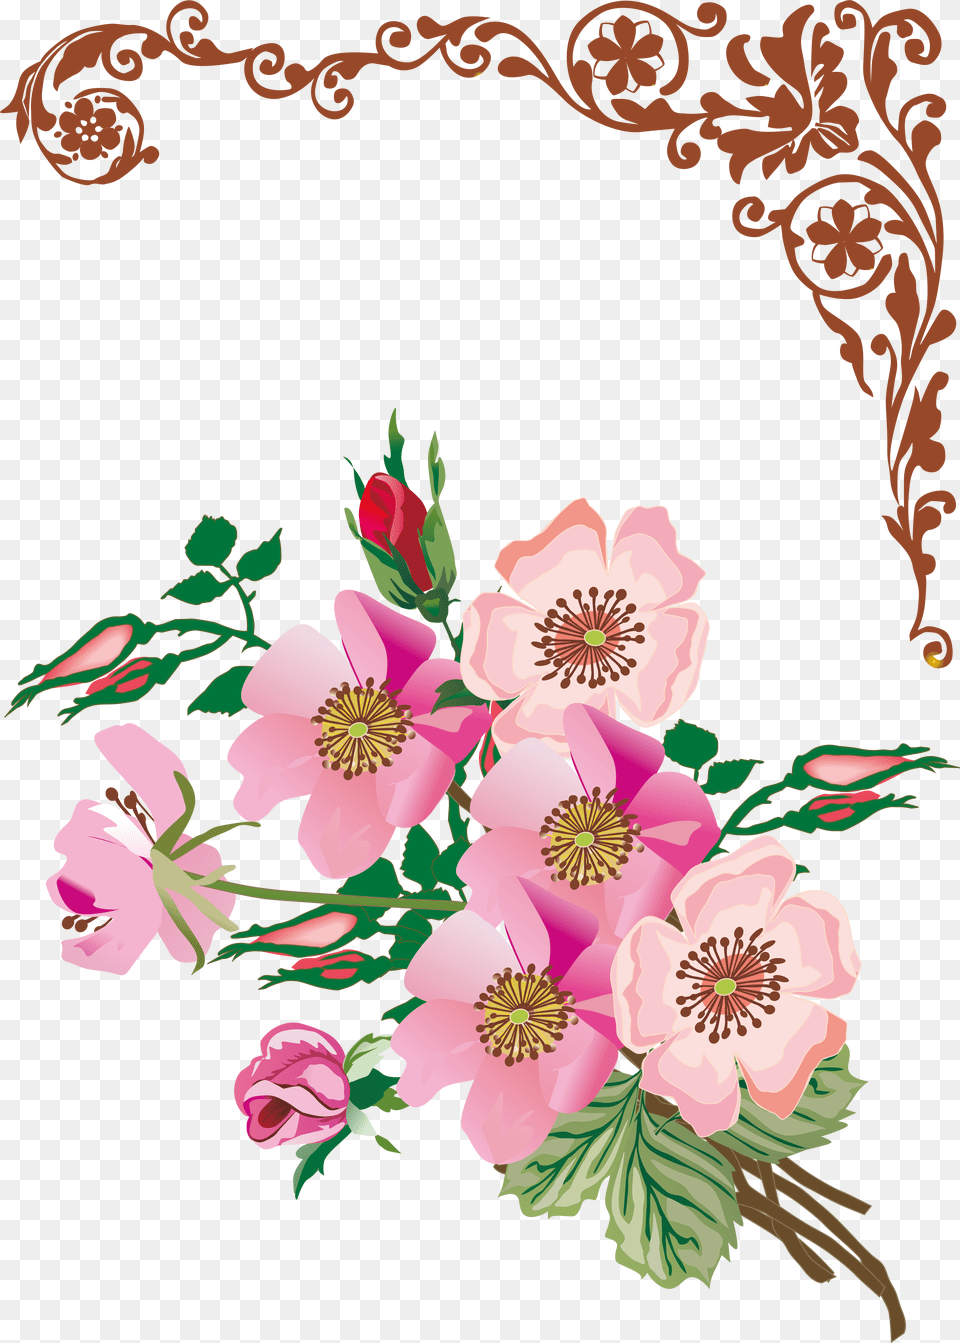 Floral Design Flower, Art, Floral Design, Graphics, Pattern Free Png